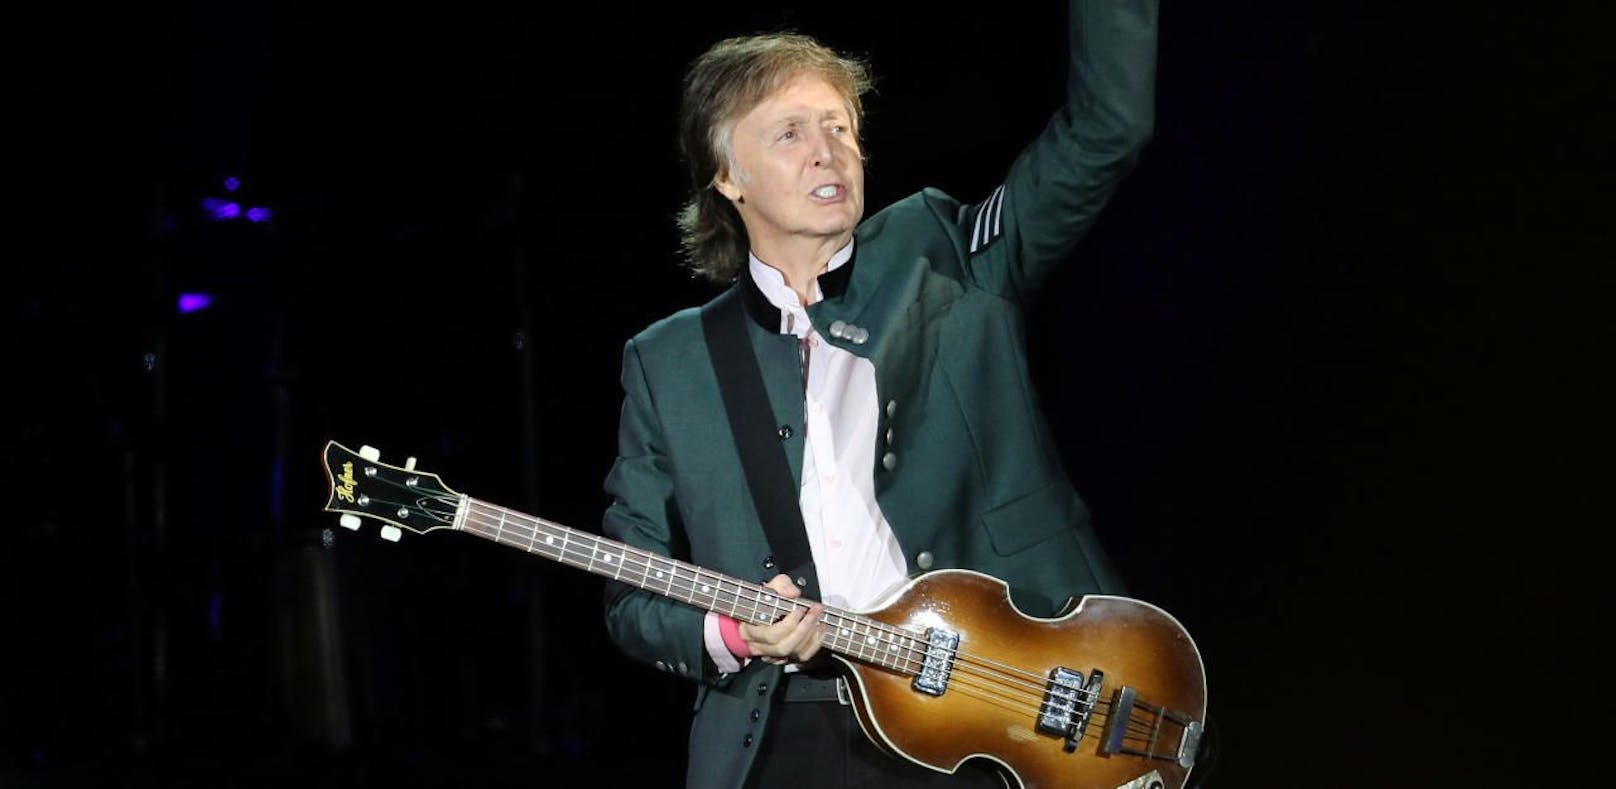 Wie gut wissen Sie über Paul McCartney Bescheid?